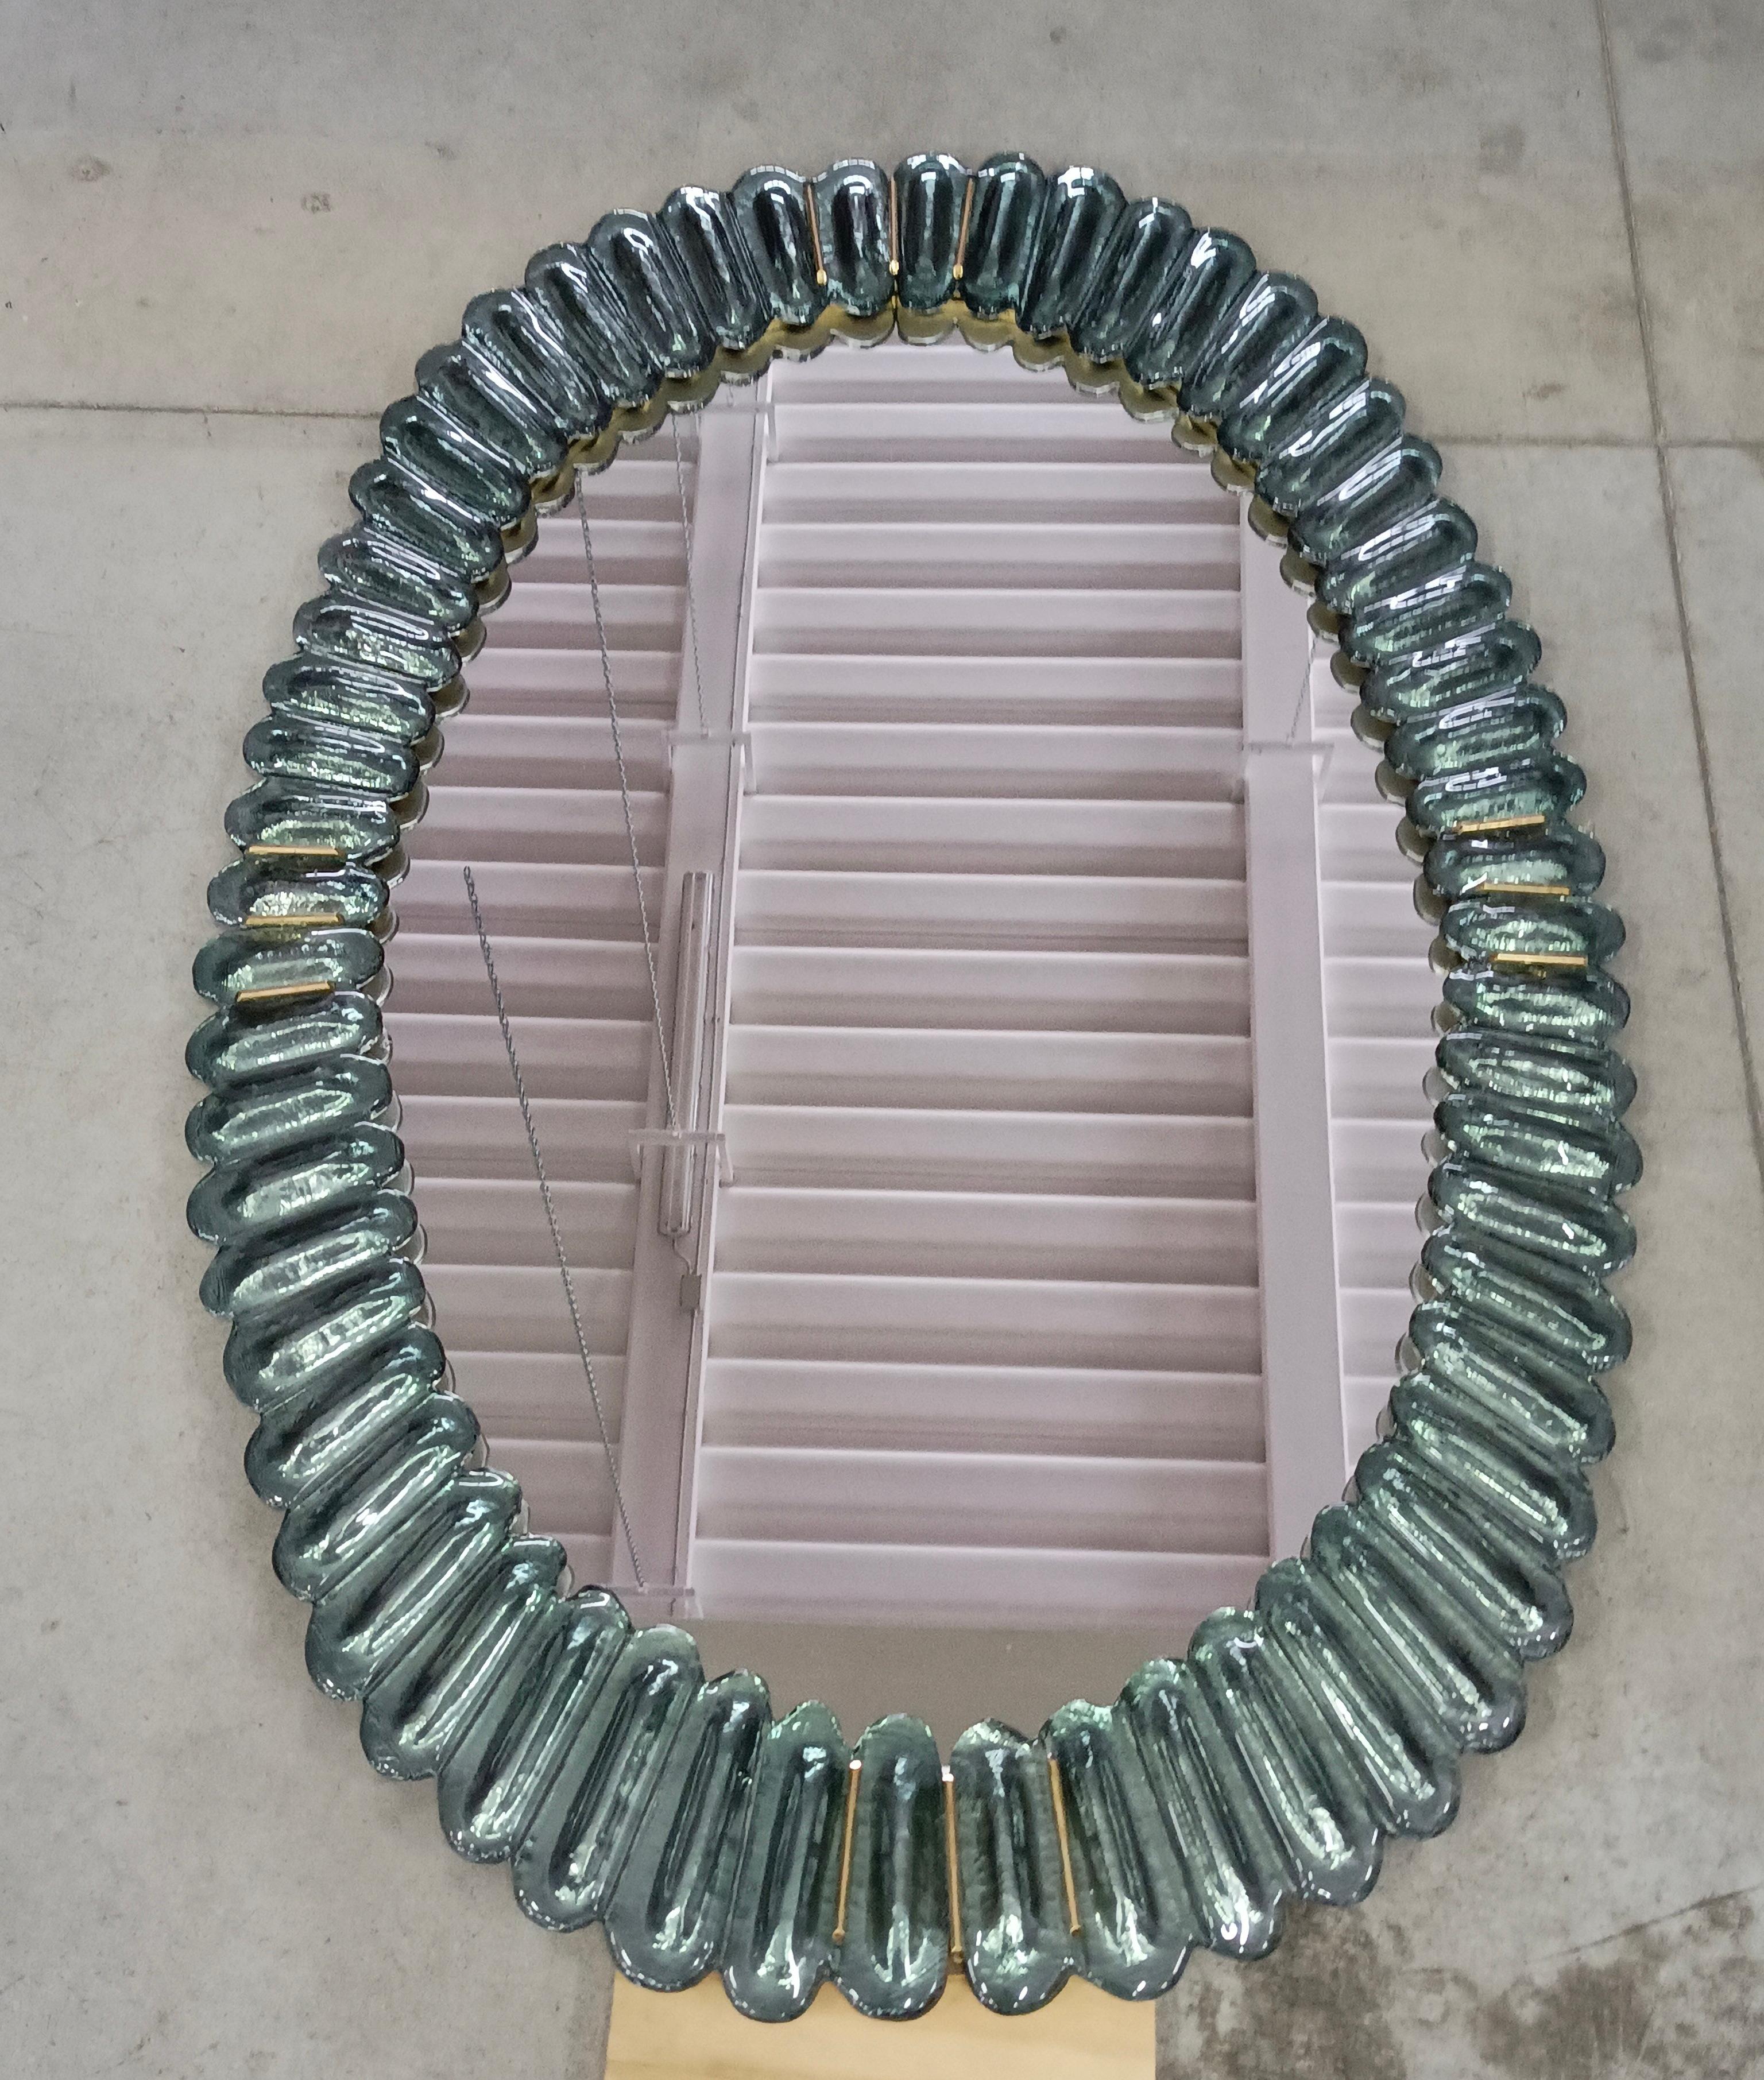 Superbe miroir en verre de Murano, Venise, de couleur vert aigue-marine flamboyant. Un miroir qui, à lui seul, meublera votre environnement domestique.

Le miroir a une structure arrière en bois, sur laquelle quatre sections de verre de Murano de